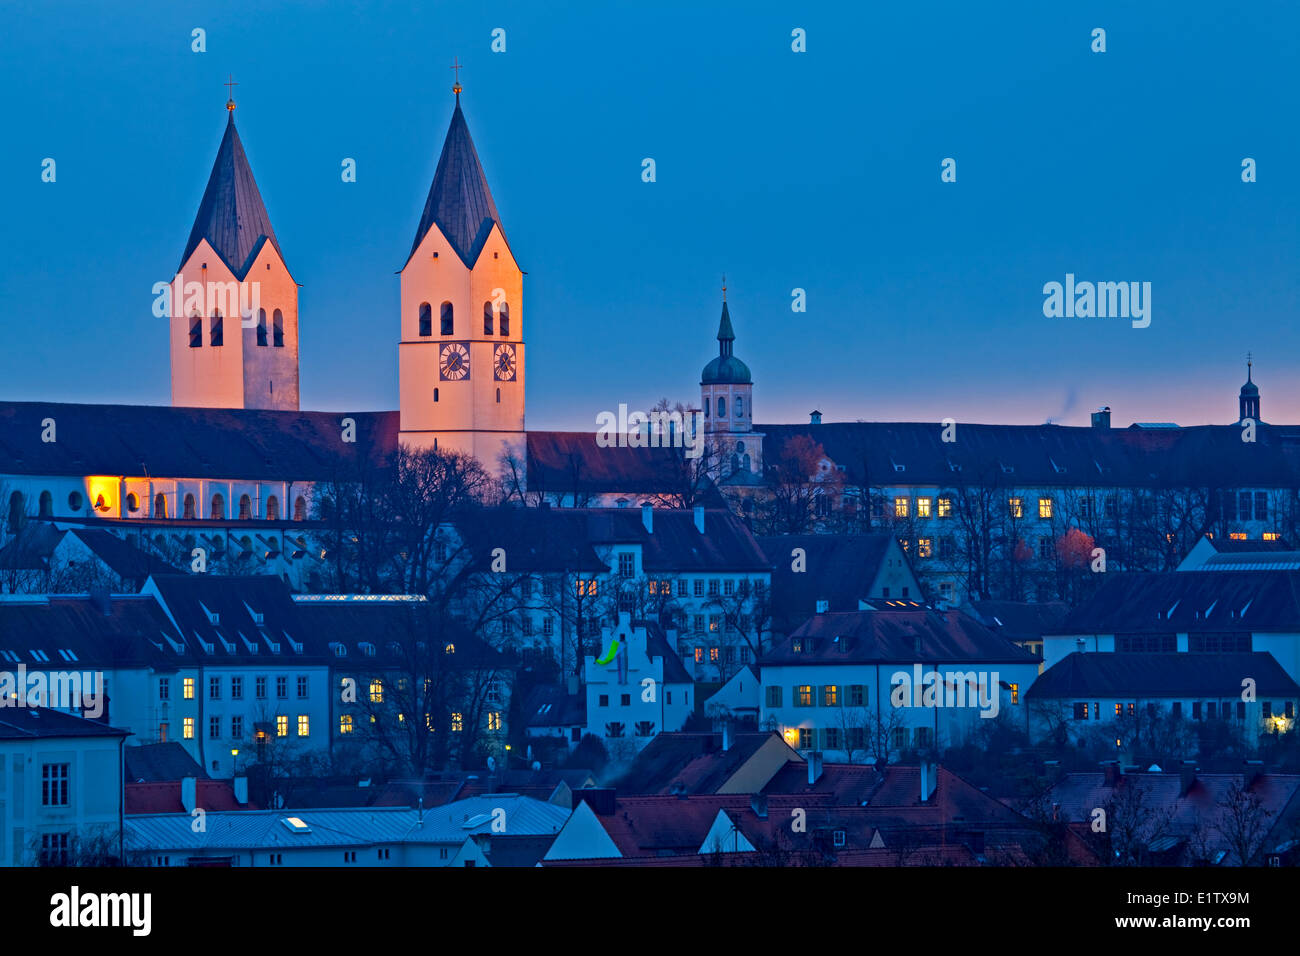 Les clochers Freisinger aka Dom (Cathédrale de Freising Mariendom) illuminé par des lumières au crépuscule comme vu sur les toits Banque D'Images